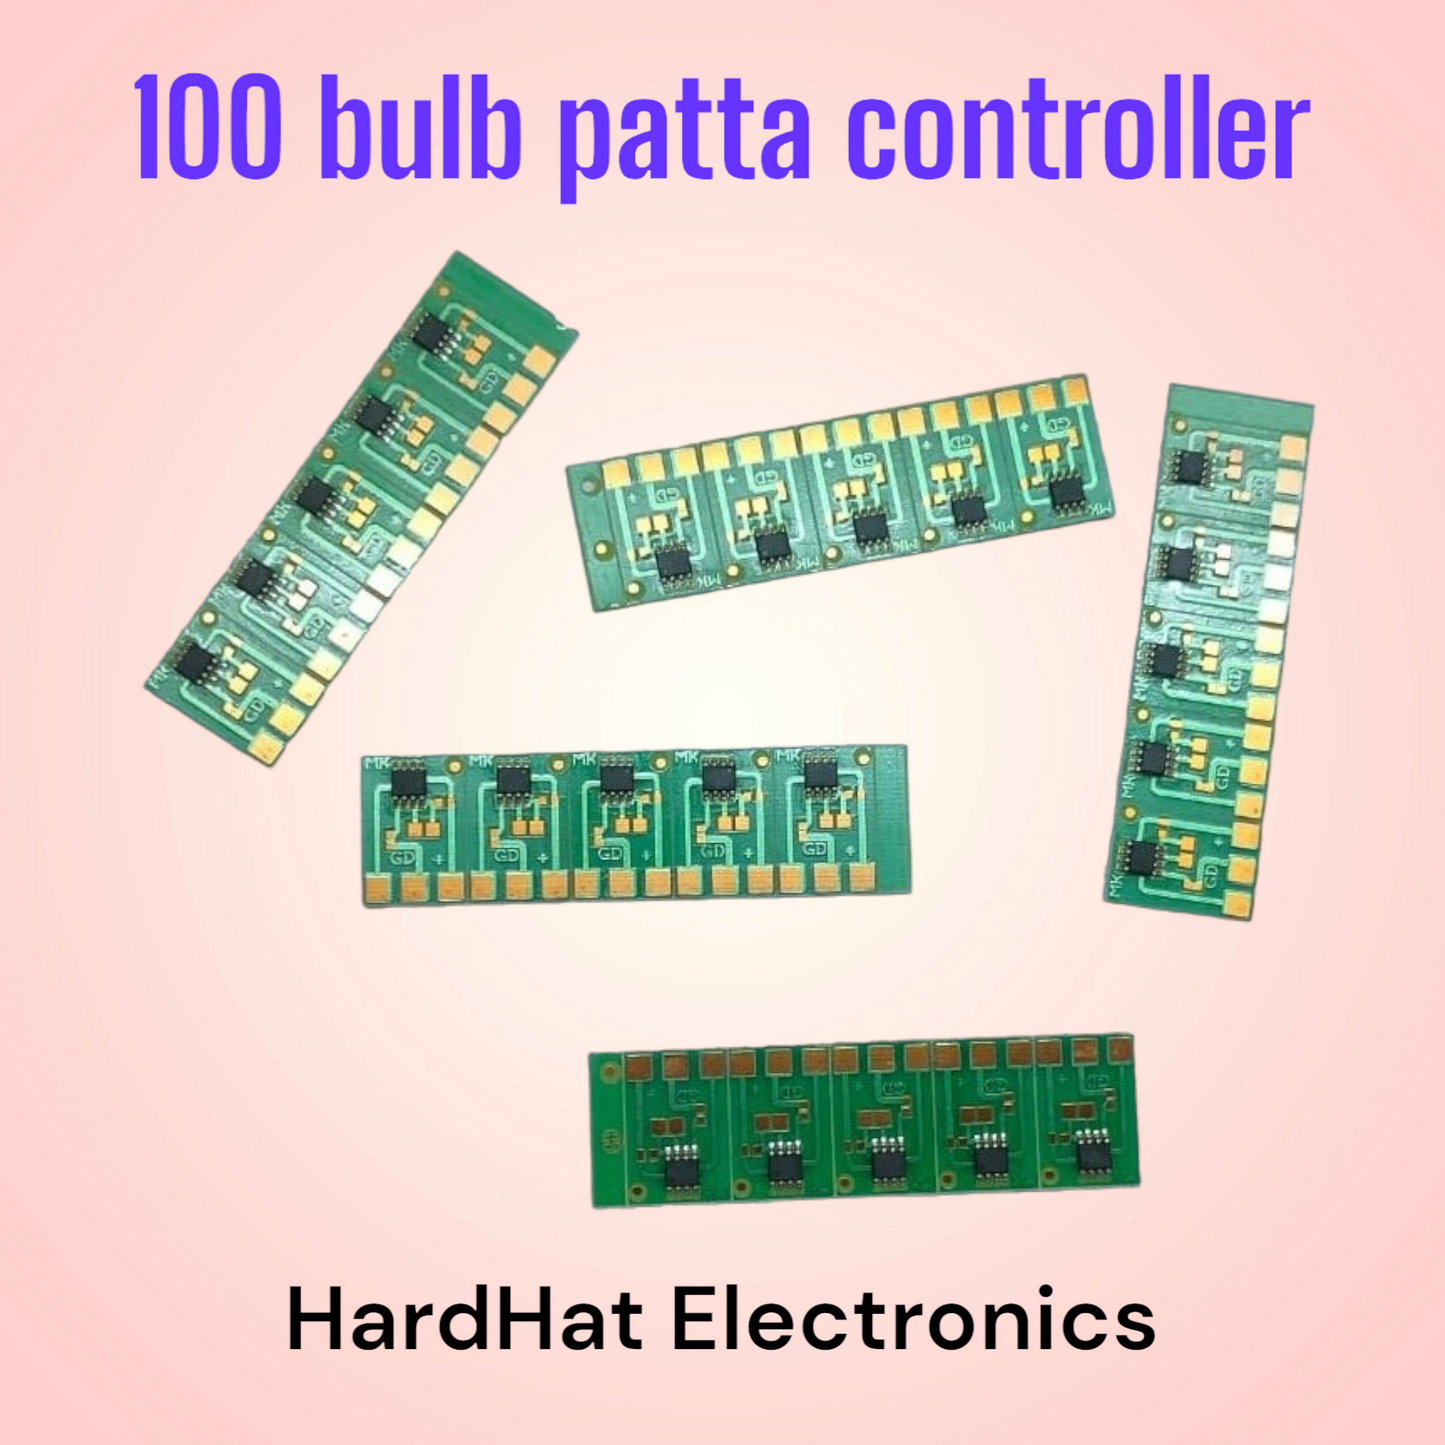 Patta controller (50-100 bulbs)